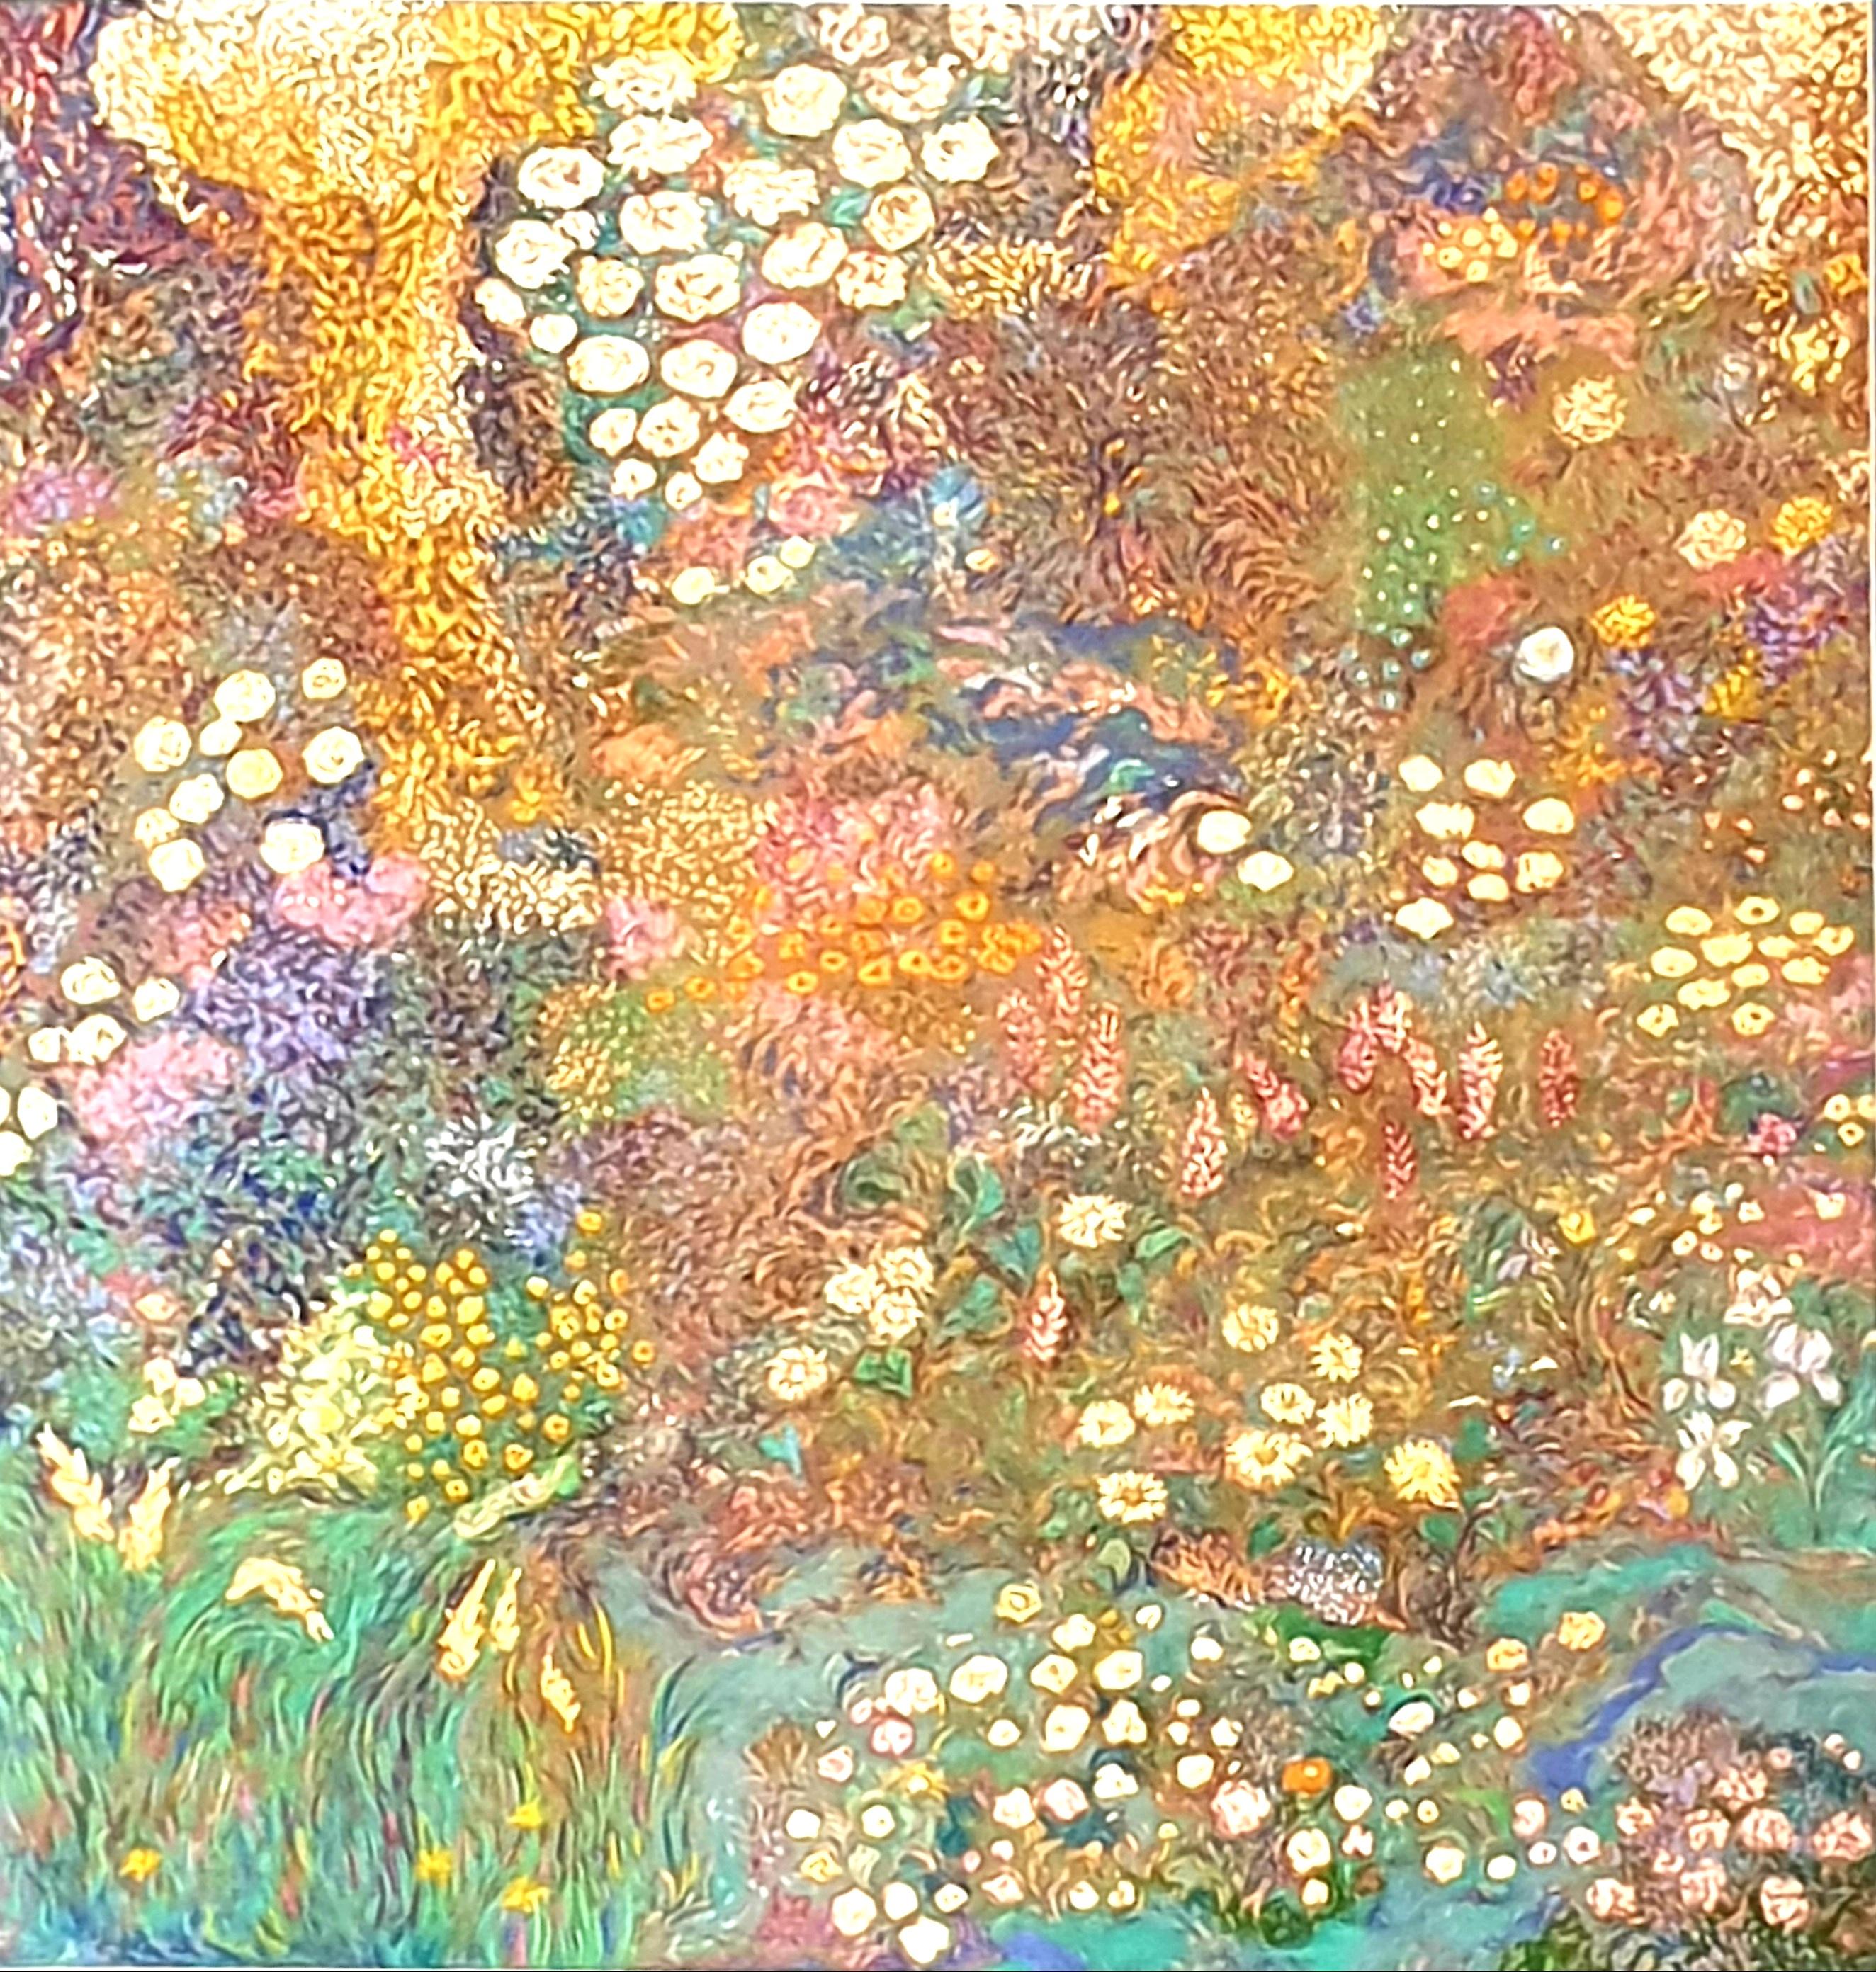 Garten in voller Blüte. Belgisches Pastell.